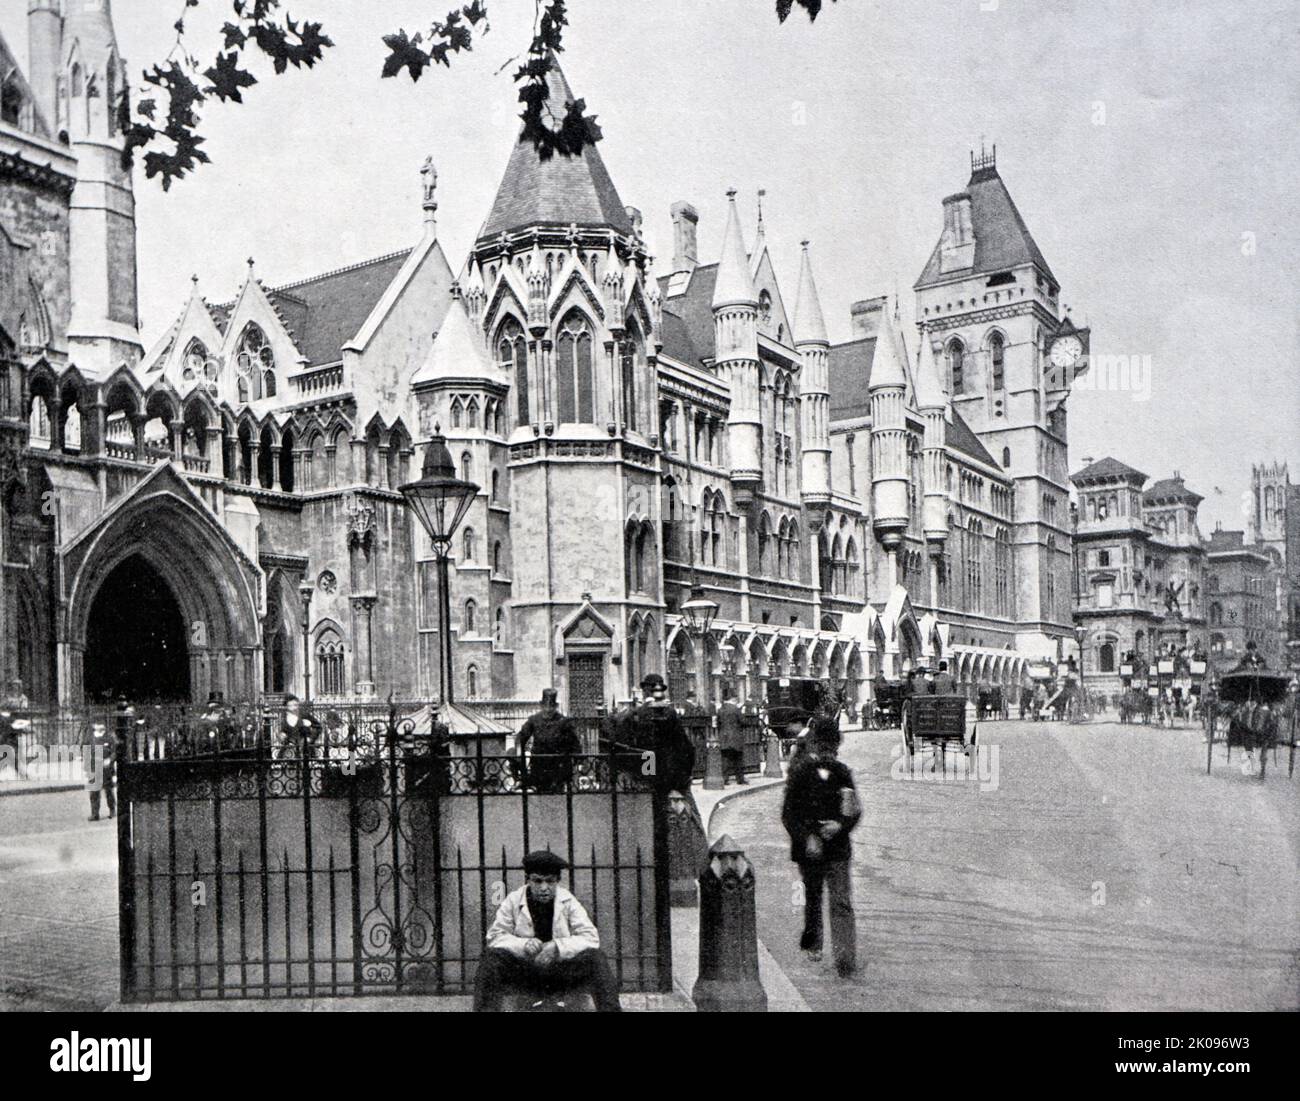 Vintage-Fotografie von London im späten viktorianischen Zeitalter, England, 1895. Stockfoto